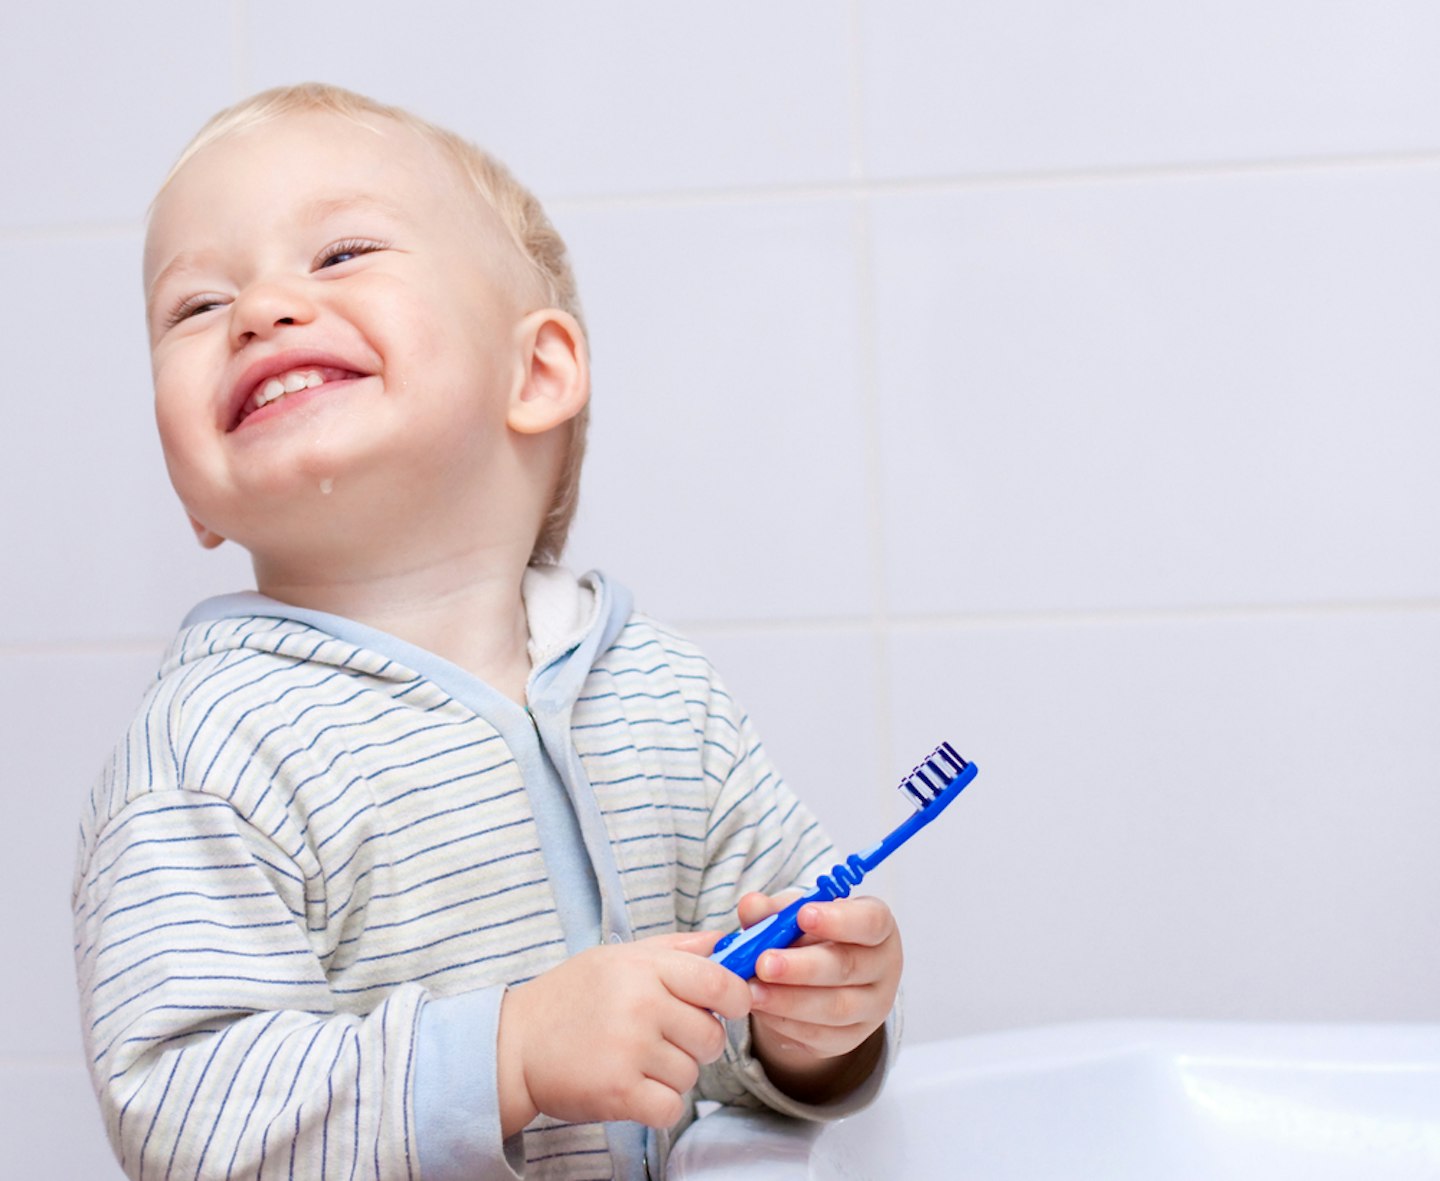 Toddler brushing his teeth